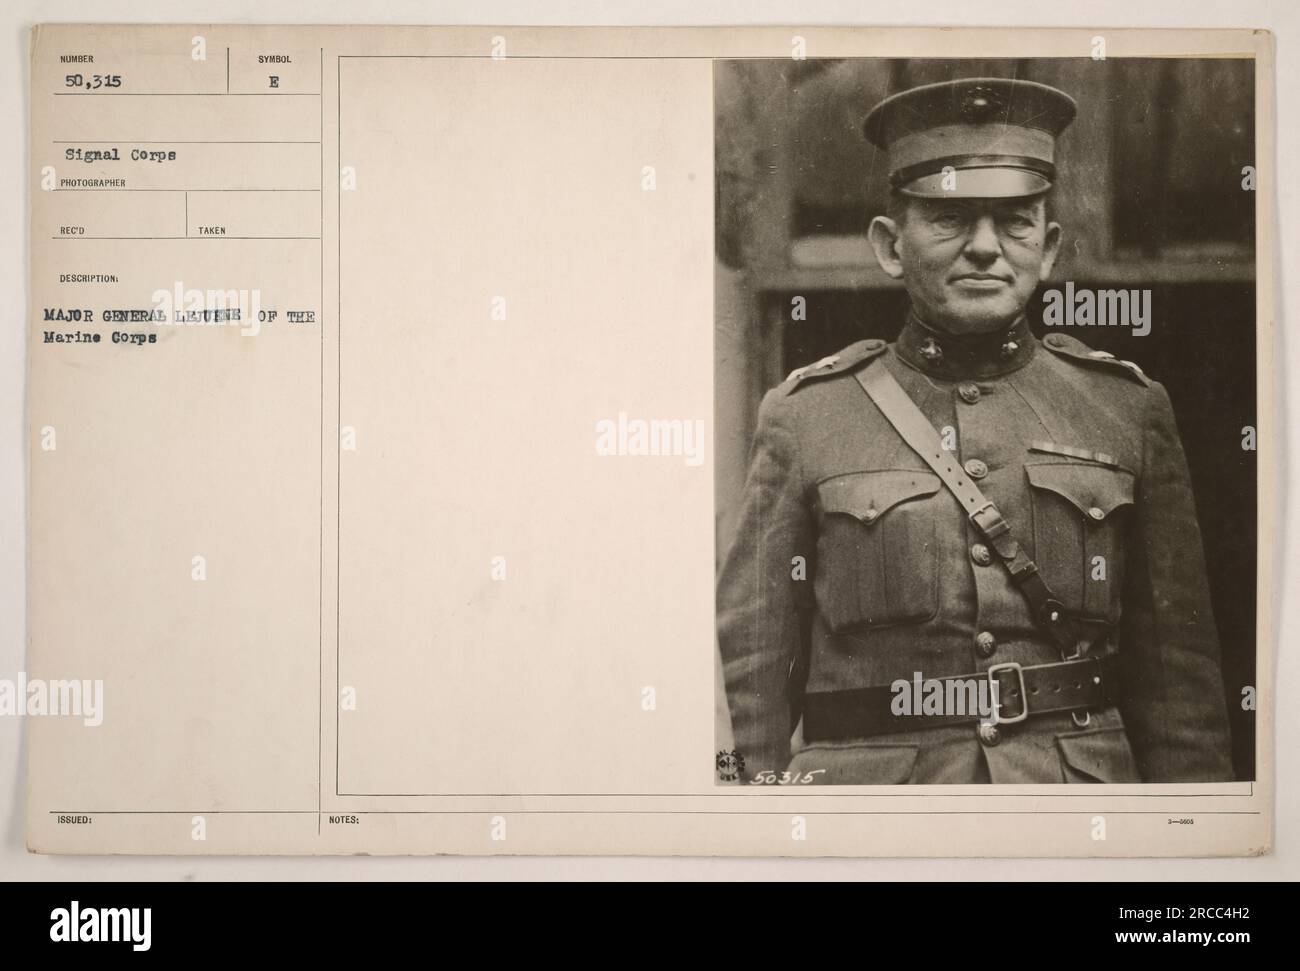 Generalmajor Lejuene vom Marinekorps, fotografiert im Ersten Weltkrieg Dieses Bild wurde vom Signalkorps aufgenommen und unter der Beschreibung "18 aufgenommen" empfangen. Das Symbol B ist ebenfalls zu sehen. Dieses Foto zeigt Major General Lejuene während seiner militärischen Aktivitäten. Stockfoto